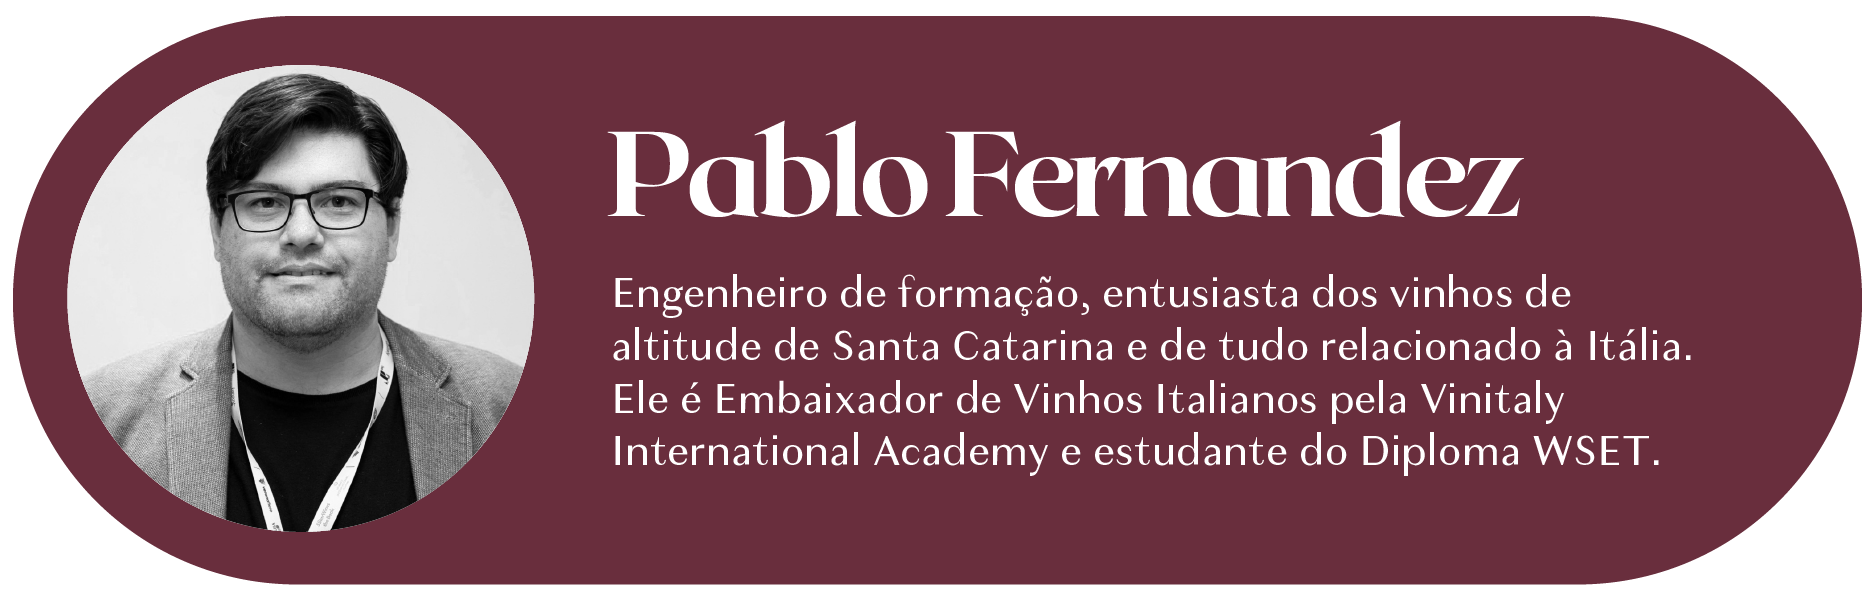 Assinatura Única Pablo Fernandez